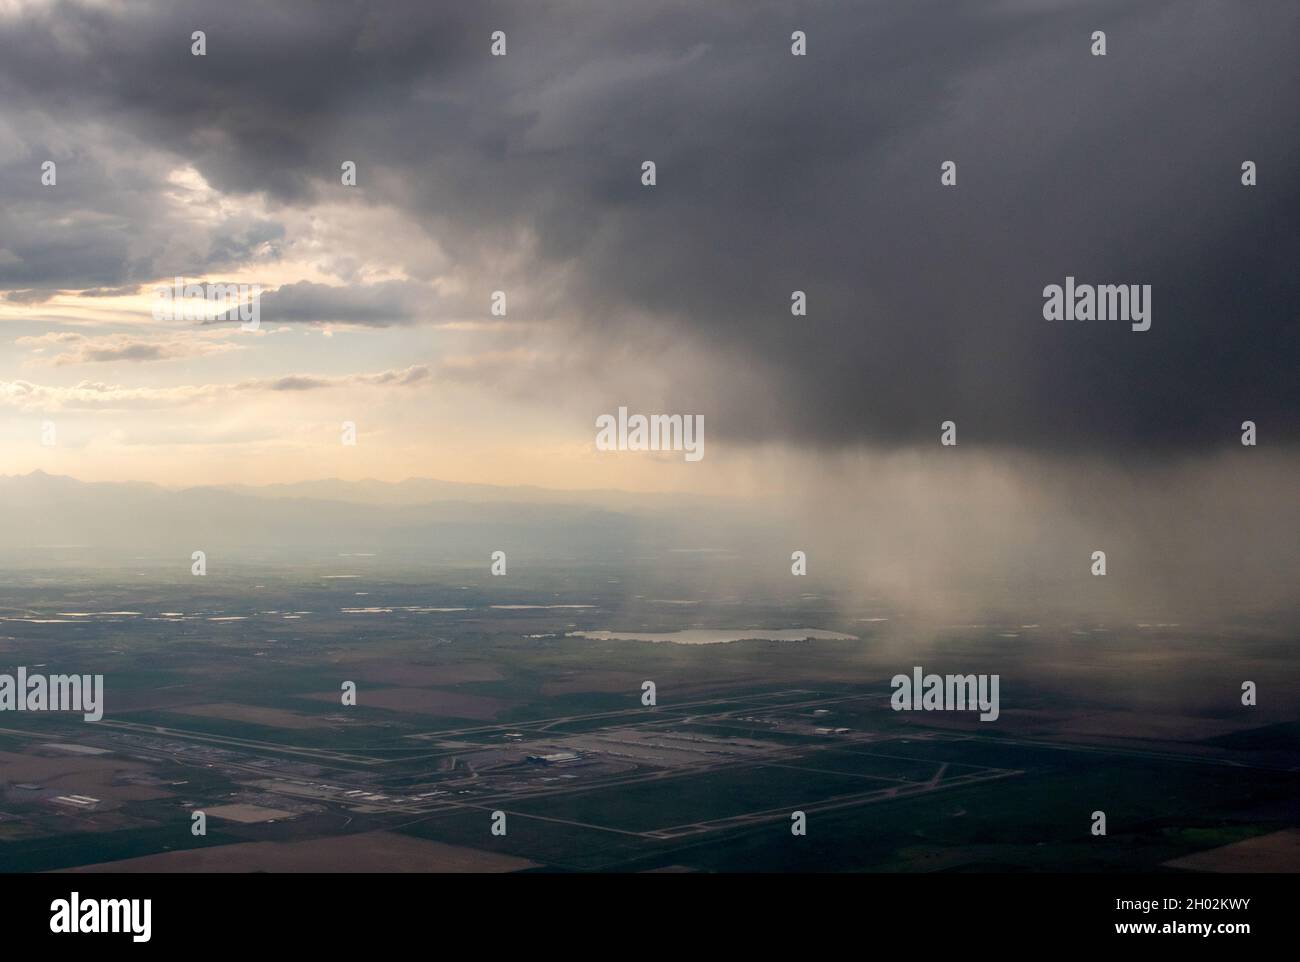 le nuvole di pioggia e tempesta si riversano su una città mentre sono viste dalla finestra di un aereo Foto Stock